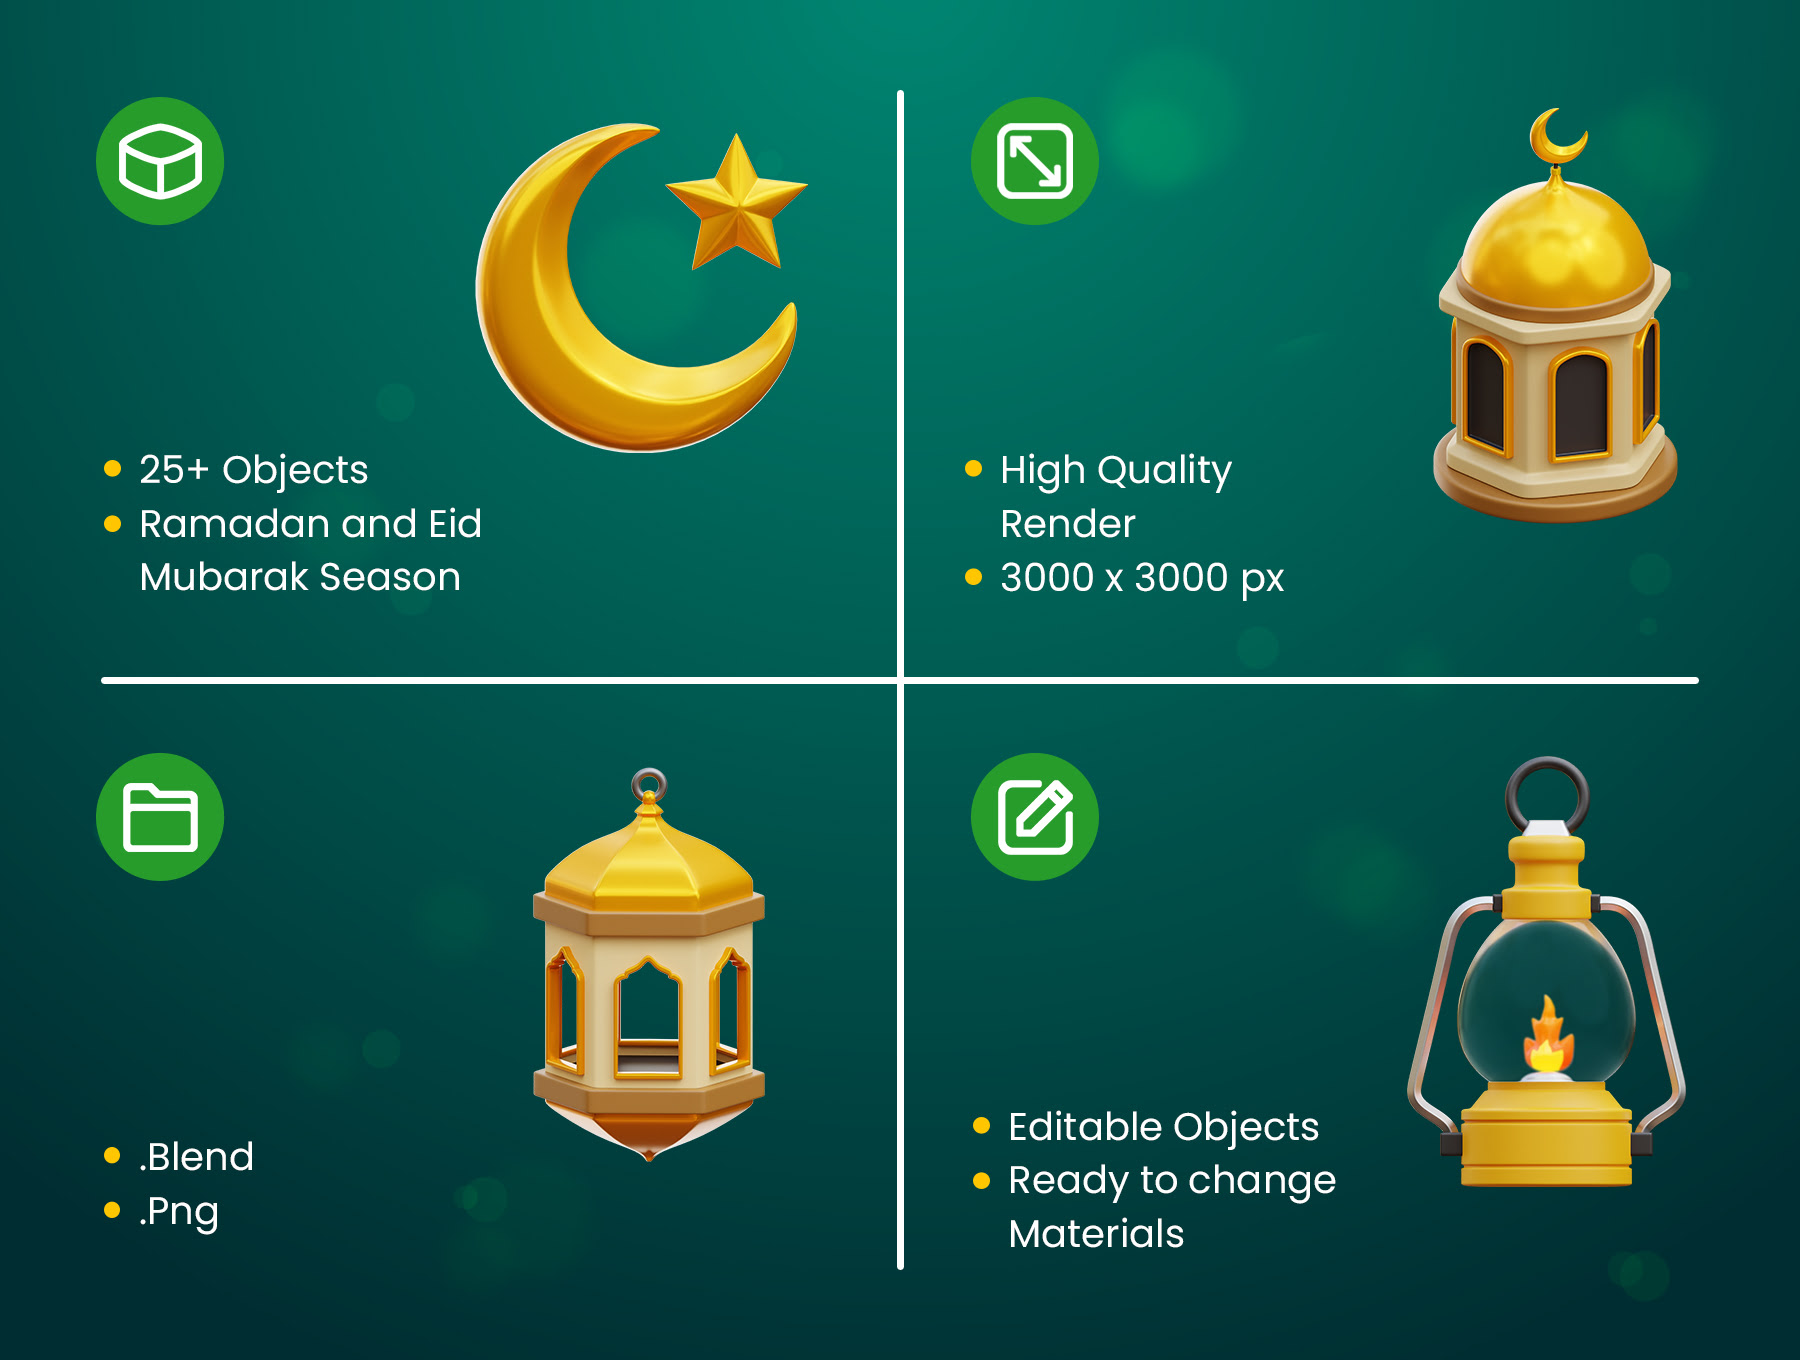 斋月和开斋节Mubarak 3D图标 Ramadan and Eid Mubarak 3D Icons blender格式-3D/图标-到位啦UI